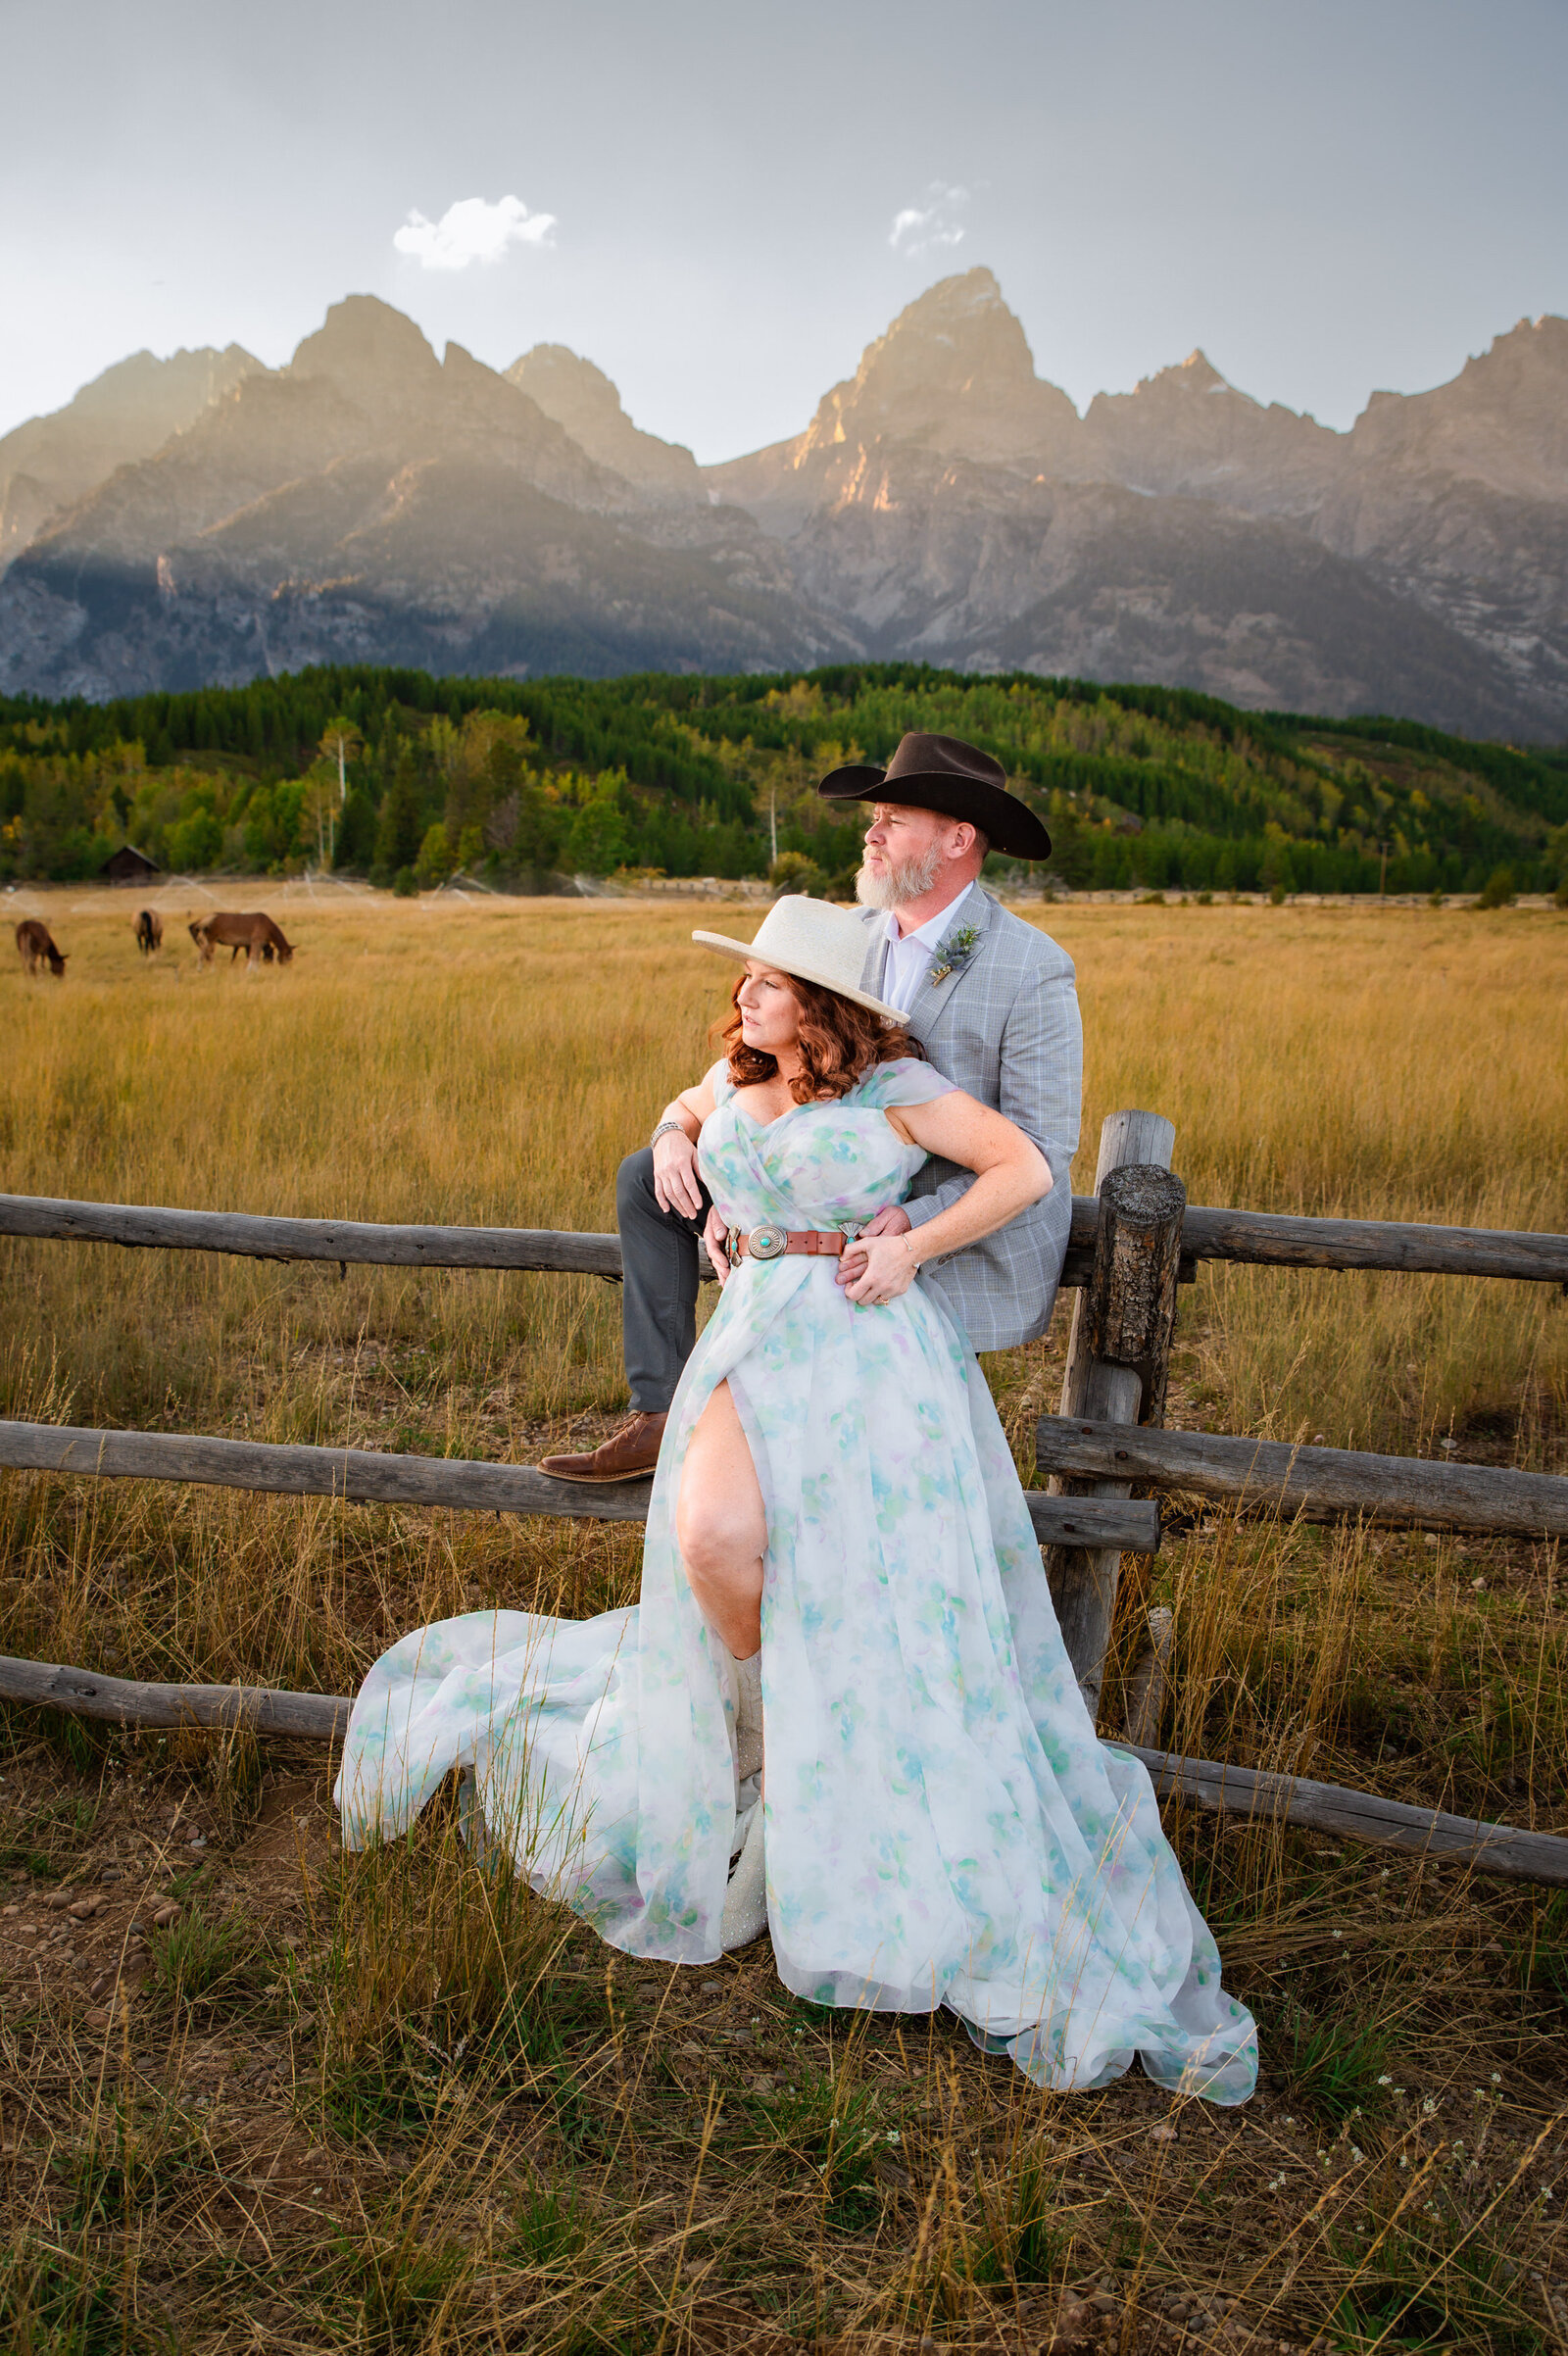 Jackson Hole photographers capture couple leaning against fence after Grand Teton wedding